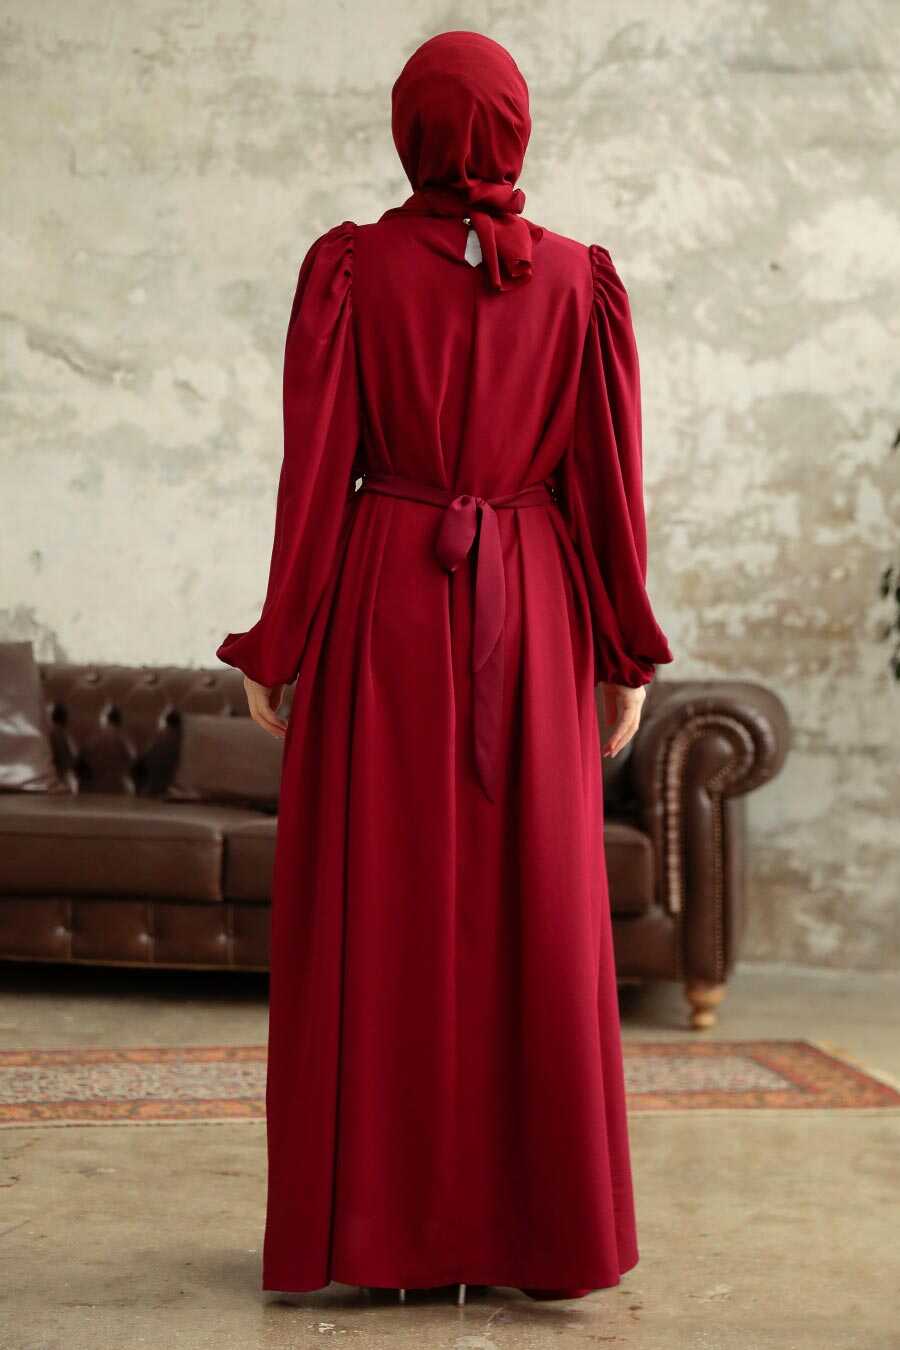  Claret Red Hijab Turkish Dress 5866BR